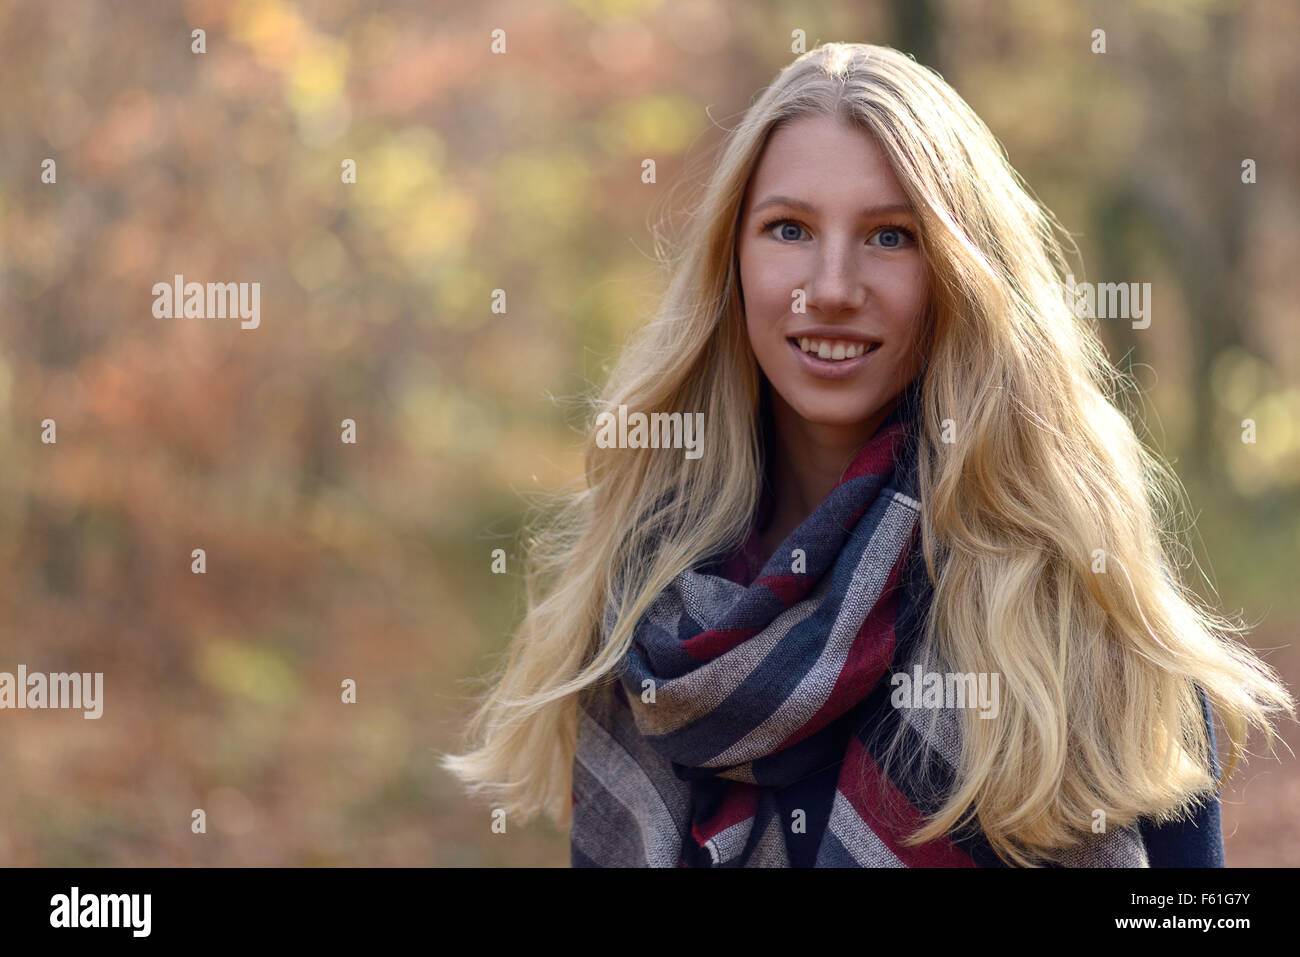 Attraktive junge Frau mit langen blonden Haaren im Herbst Mode tragen einen trendigen Schal stehen im Freien im Herbst Wald lächelnd Stockfoto